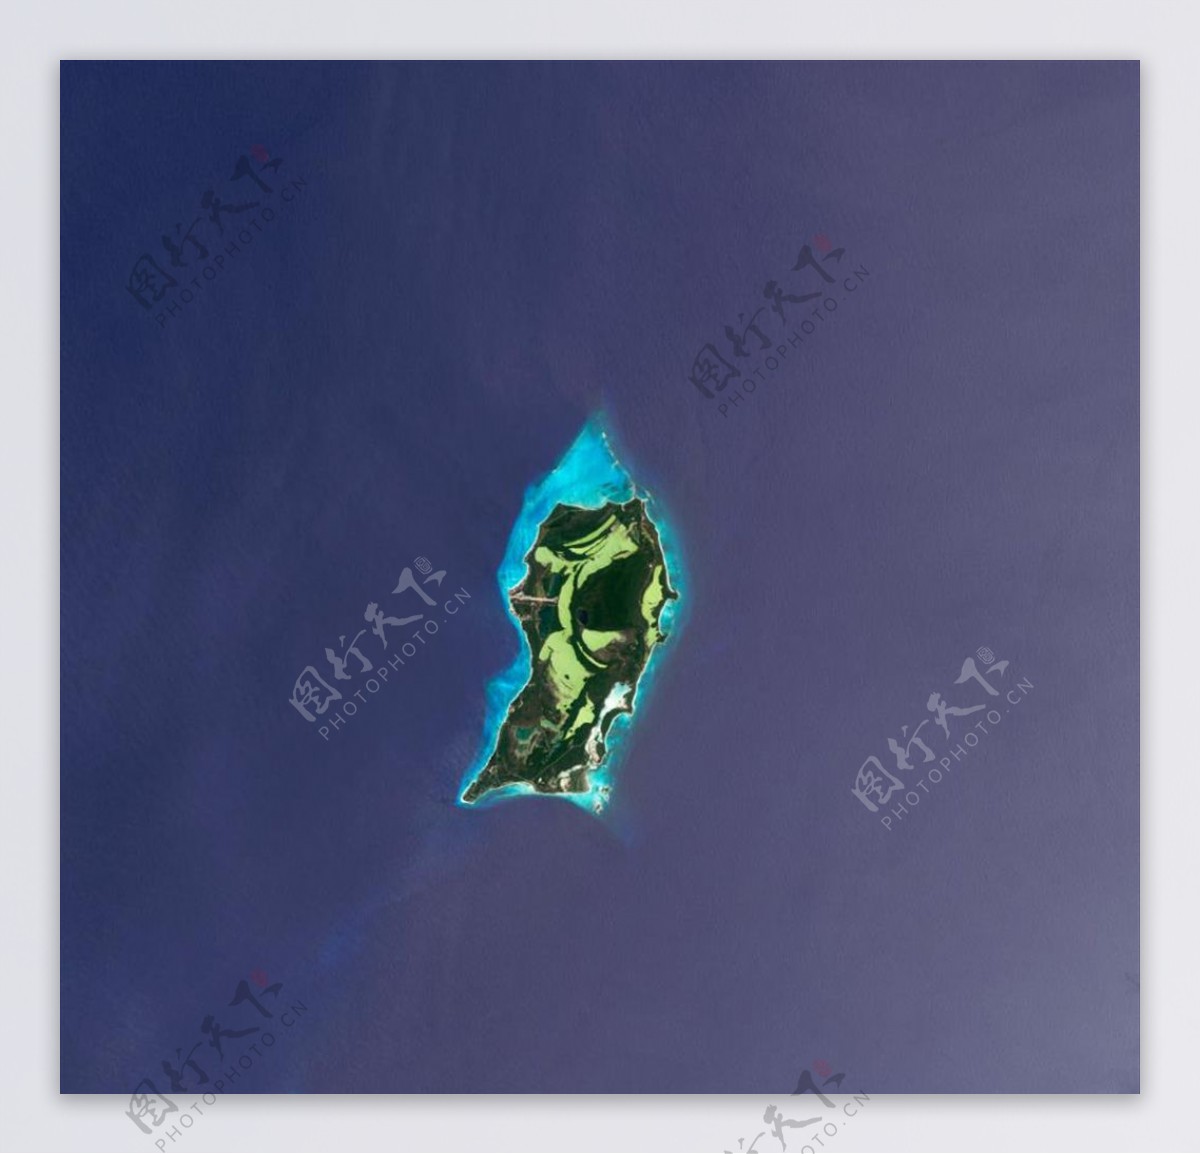 绝美海岛卫星遥感图